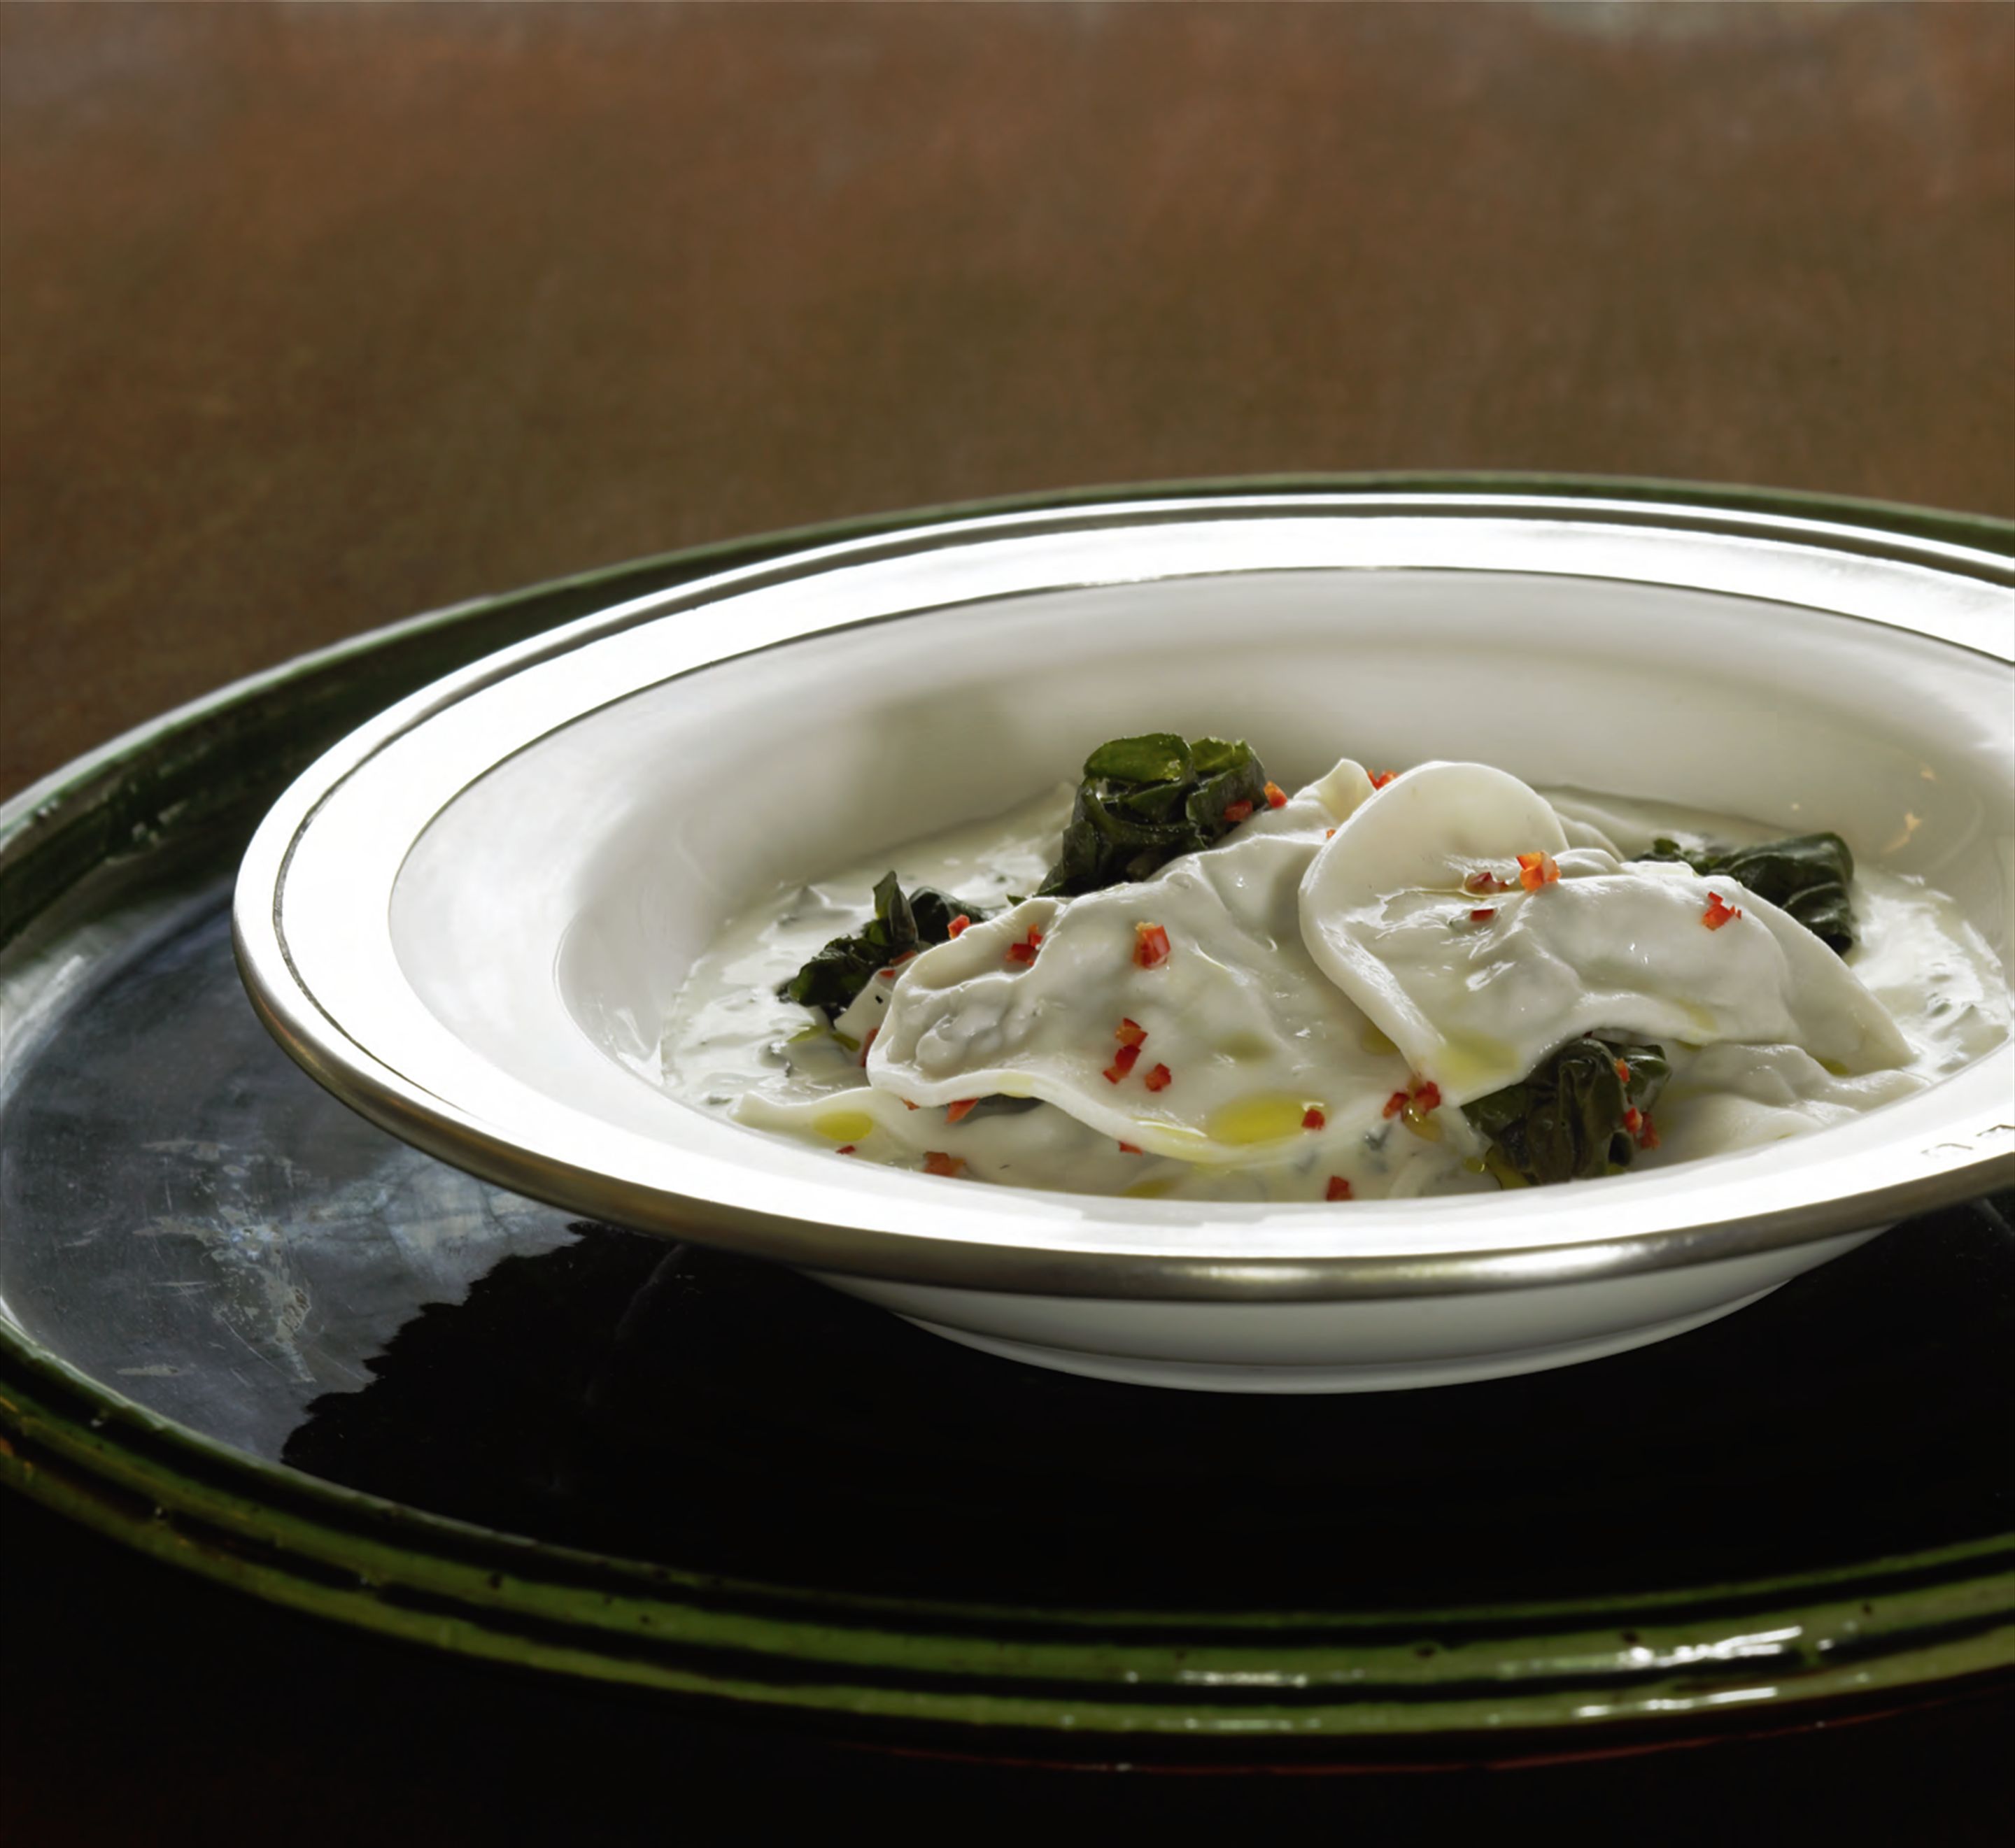 Chiche barak Lebanese-style dumplings in yoghurt soup with silverbeet